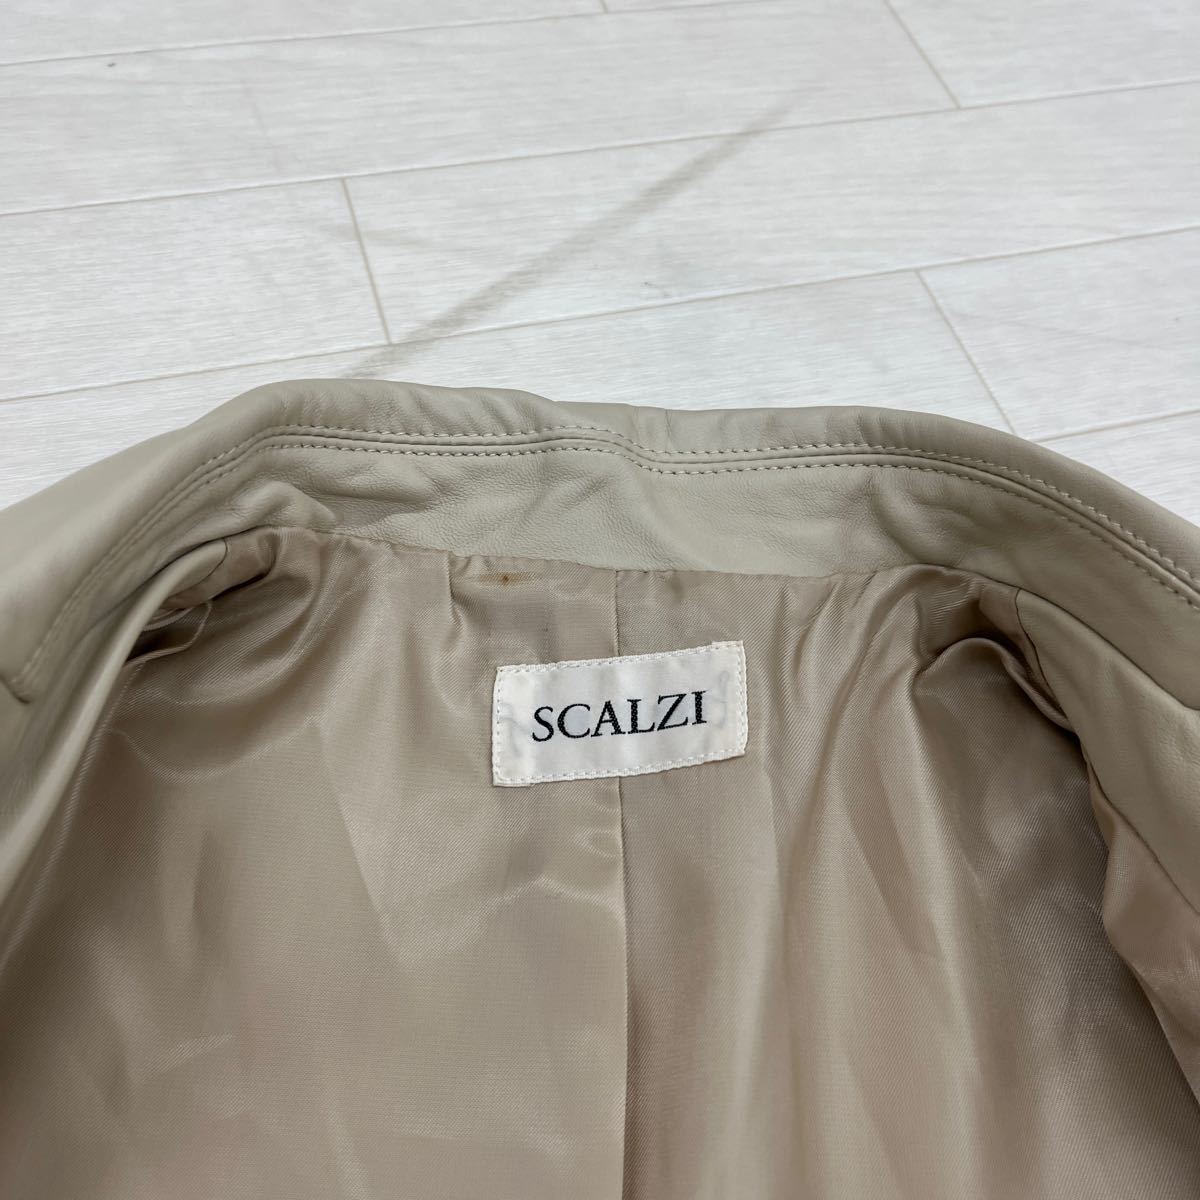 1251* SCALZI tops tailored jacket одиночный 3 кнопка настоящий кожа телячья кожа длинный рукав casual бежевый женский LL